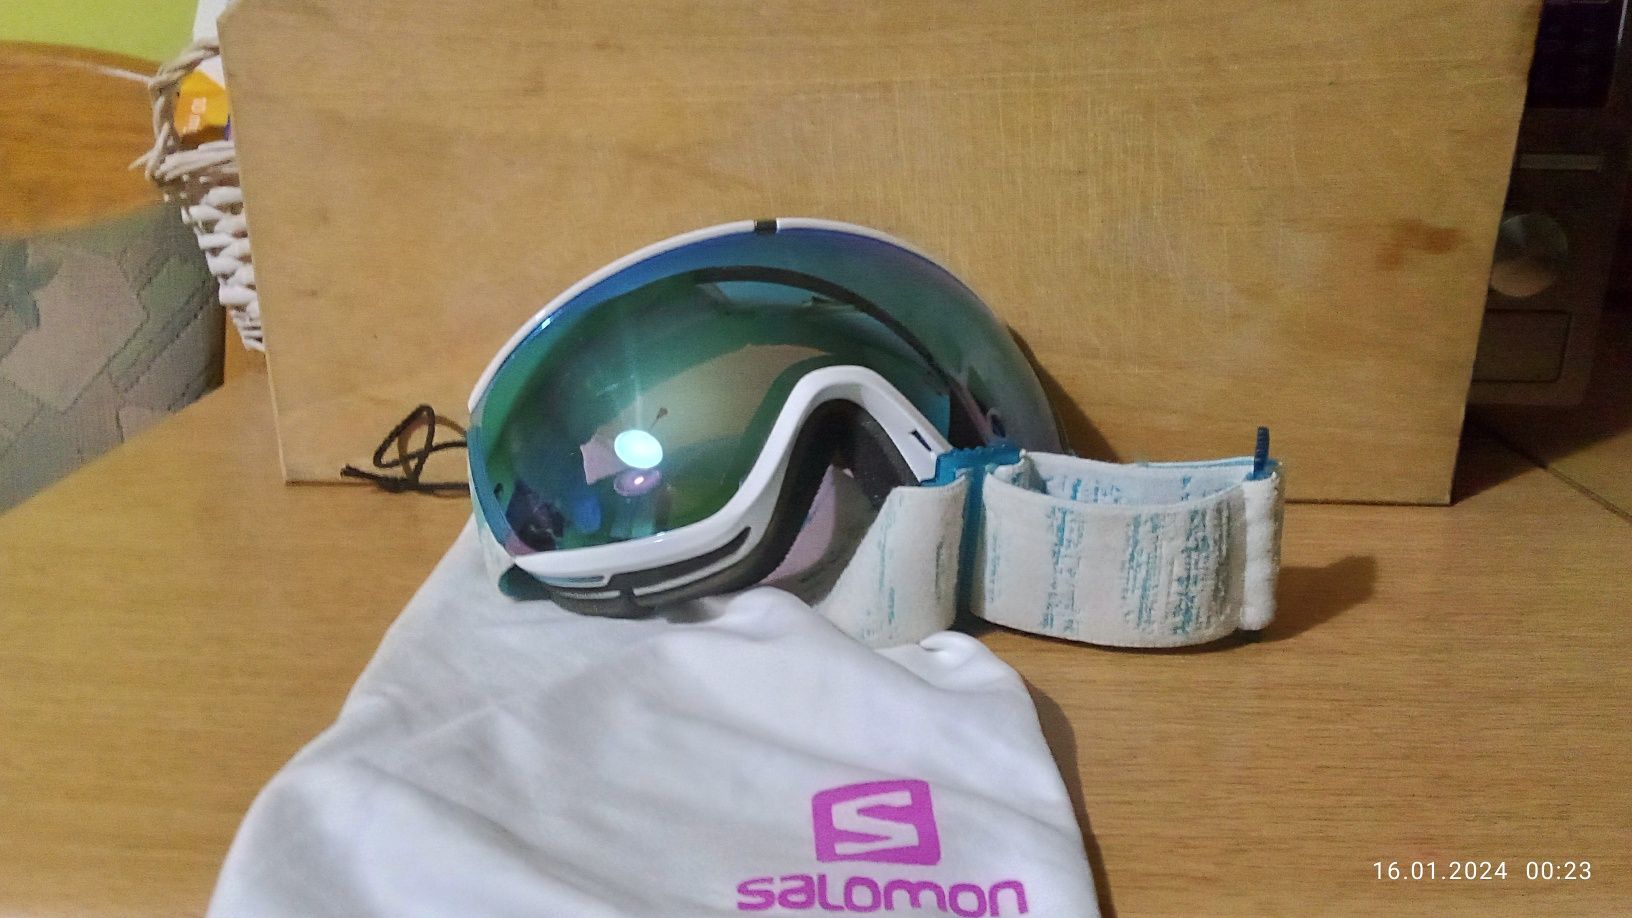 SALOMON gogle narciarskie/snowboardowe damskie